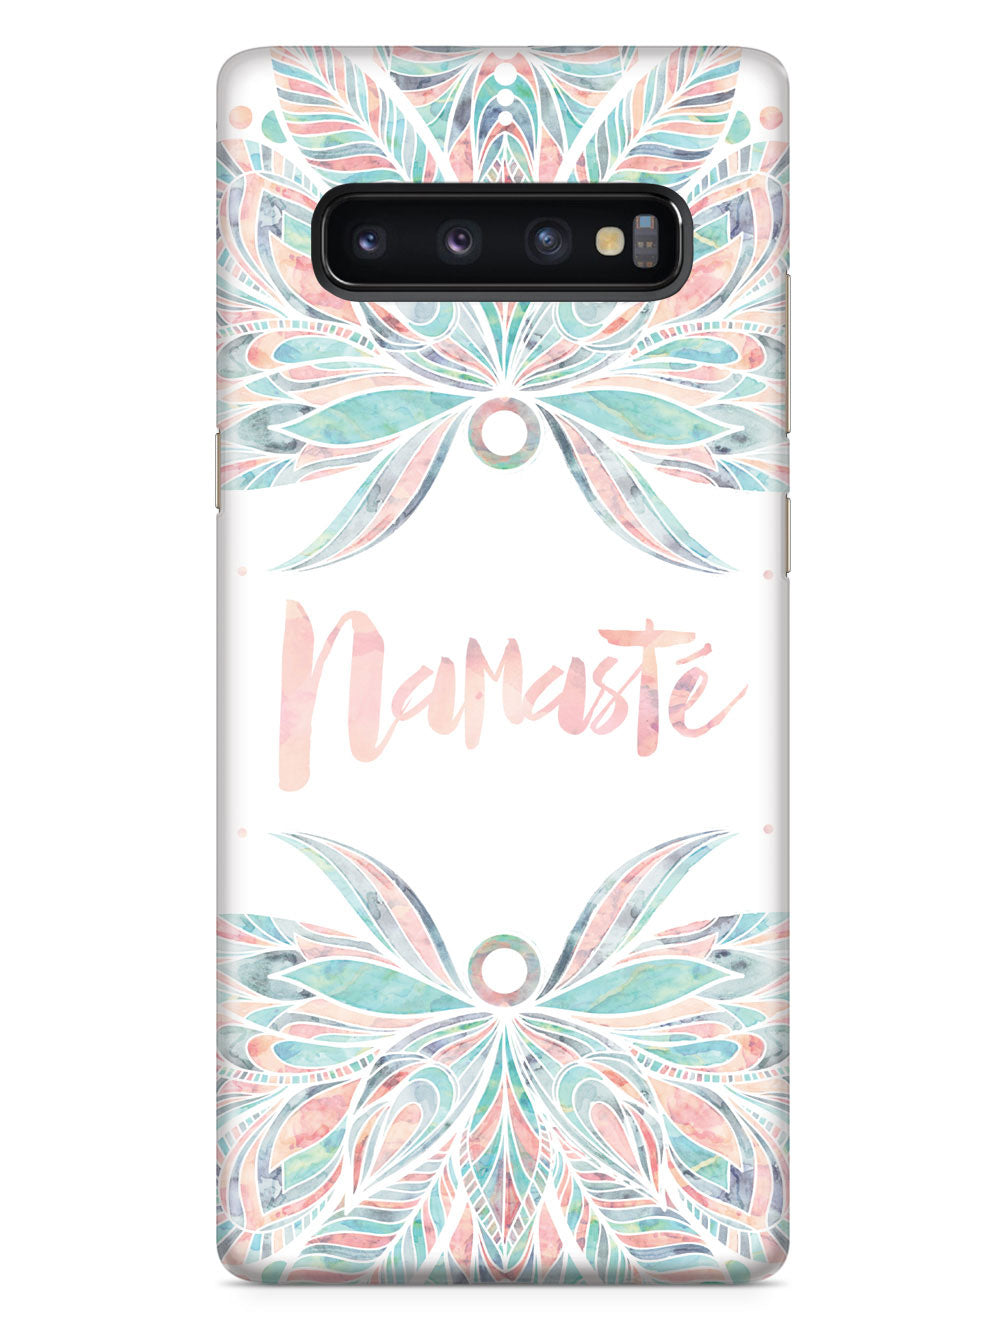 Namaste Case